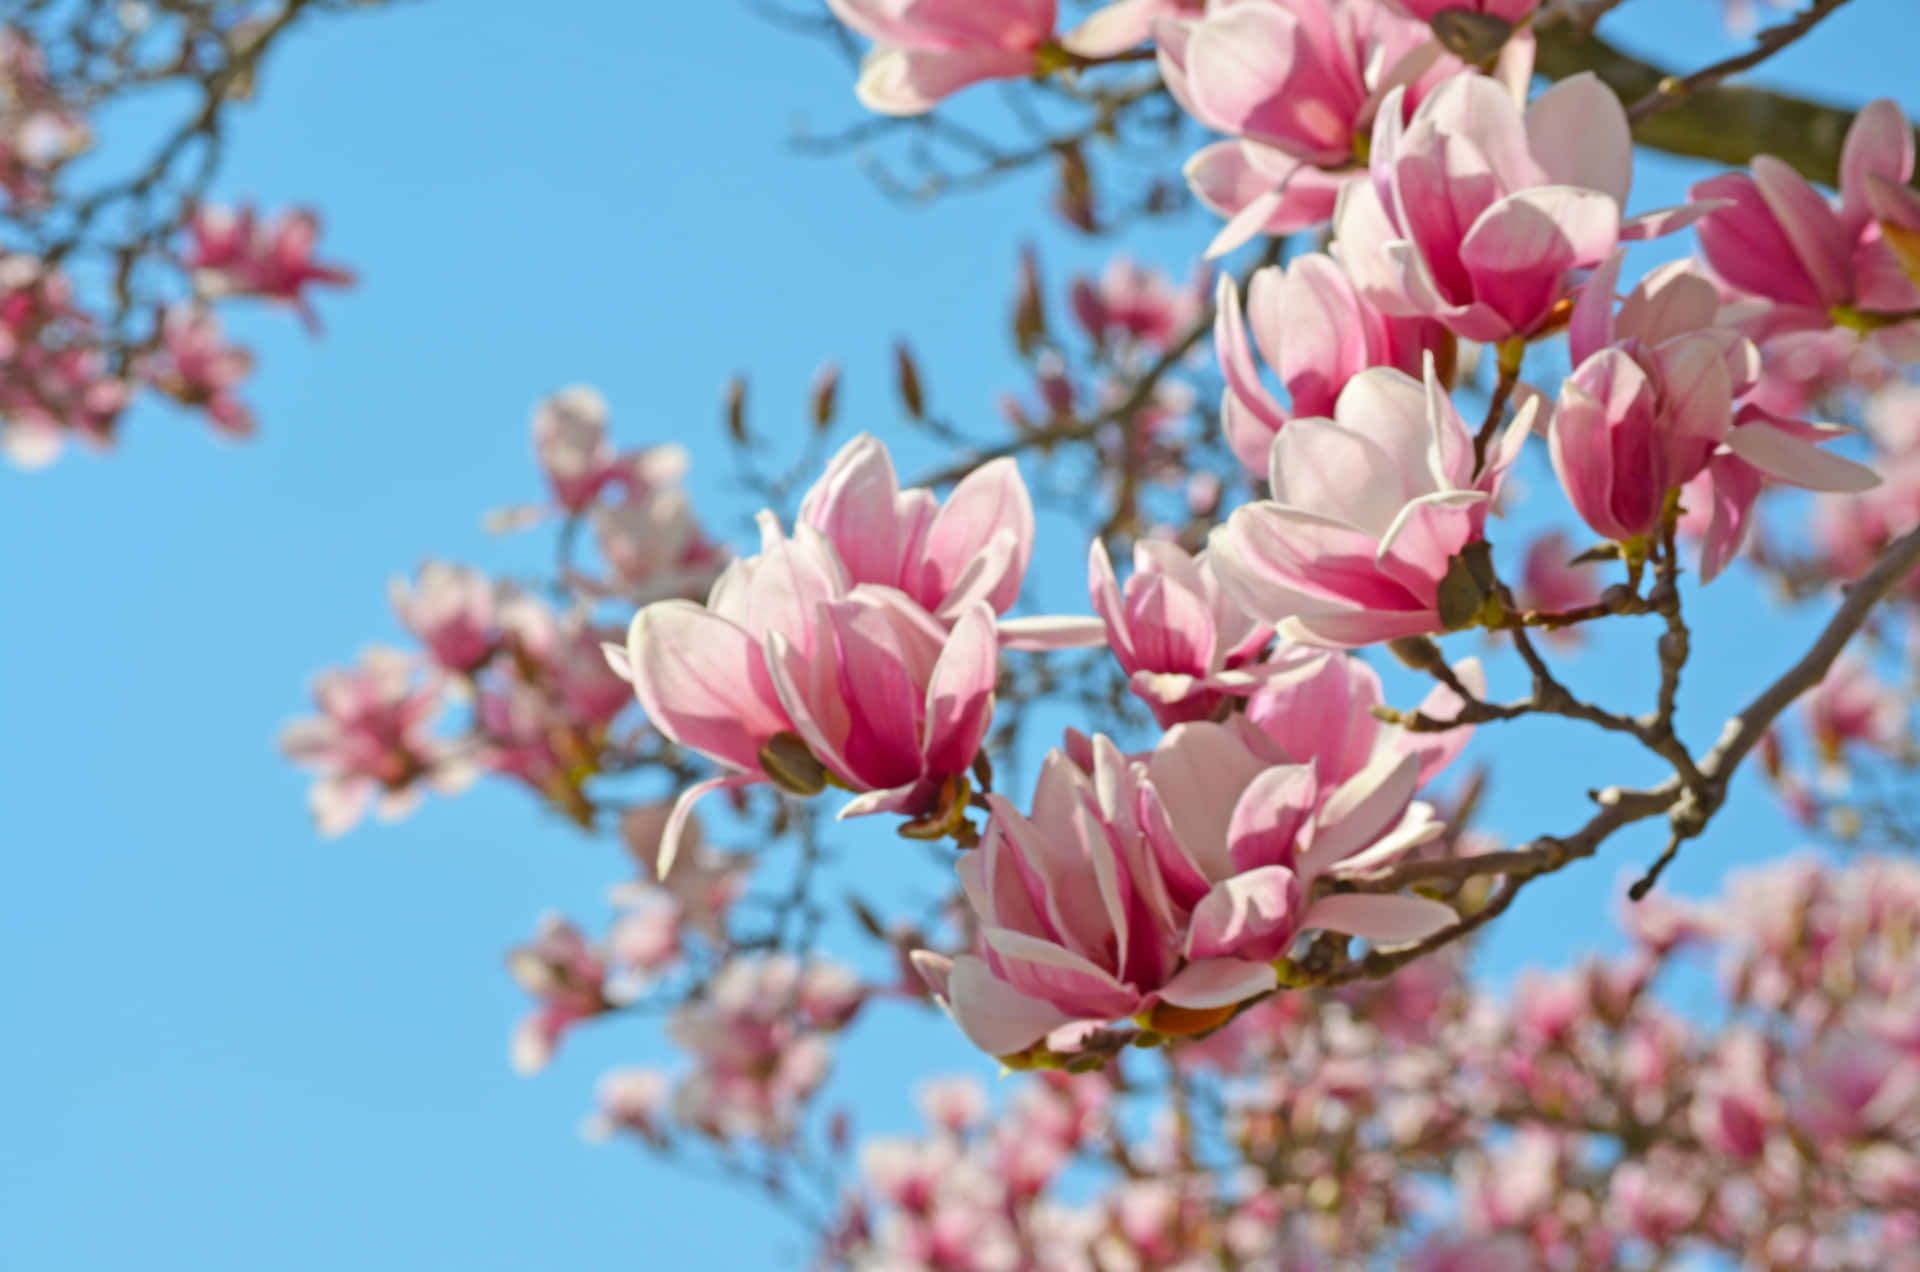 Magnoliablomsten - Et Symbol På Skønhed Og Vedholdenhed.